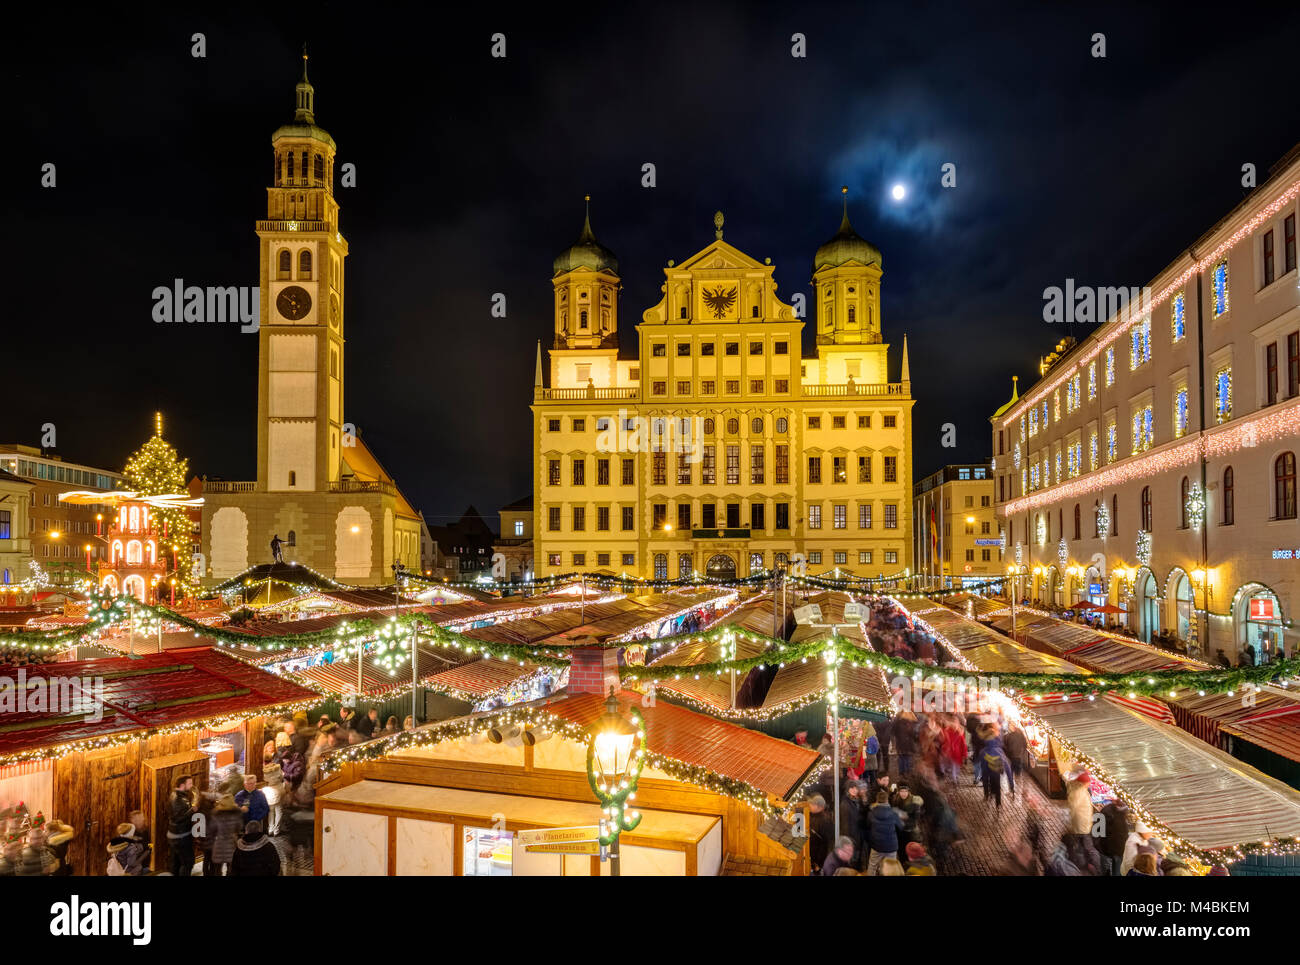 Weihnachtsmarkt, Perlach Tower und Rathaus, Rathausplatz, bei Nacht, Augsburg, Schwaben, Bayern, Deutschland Stockfoto